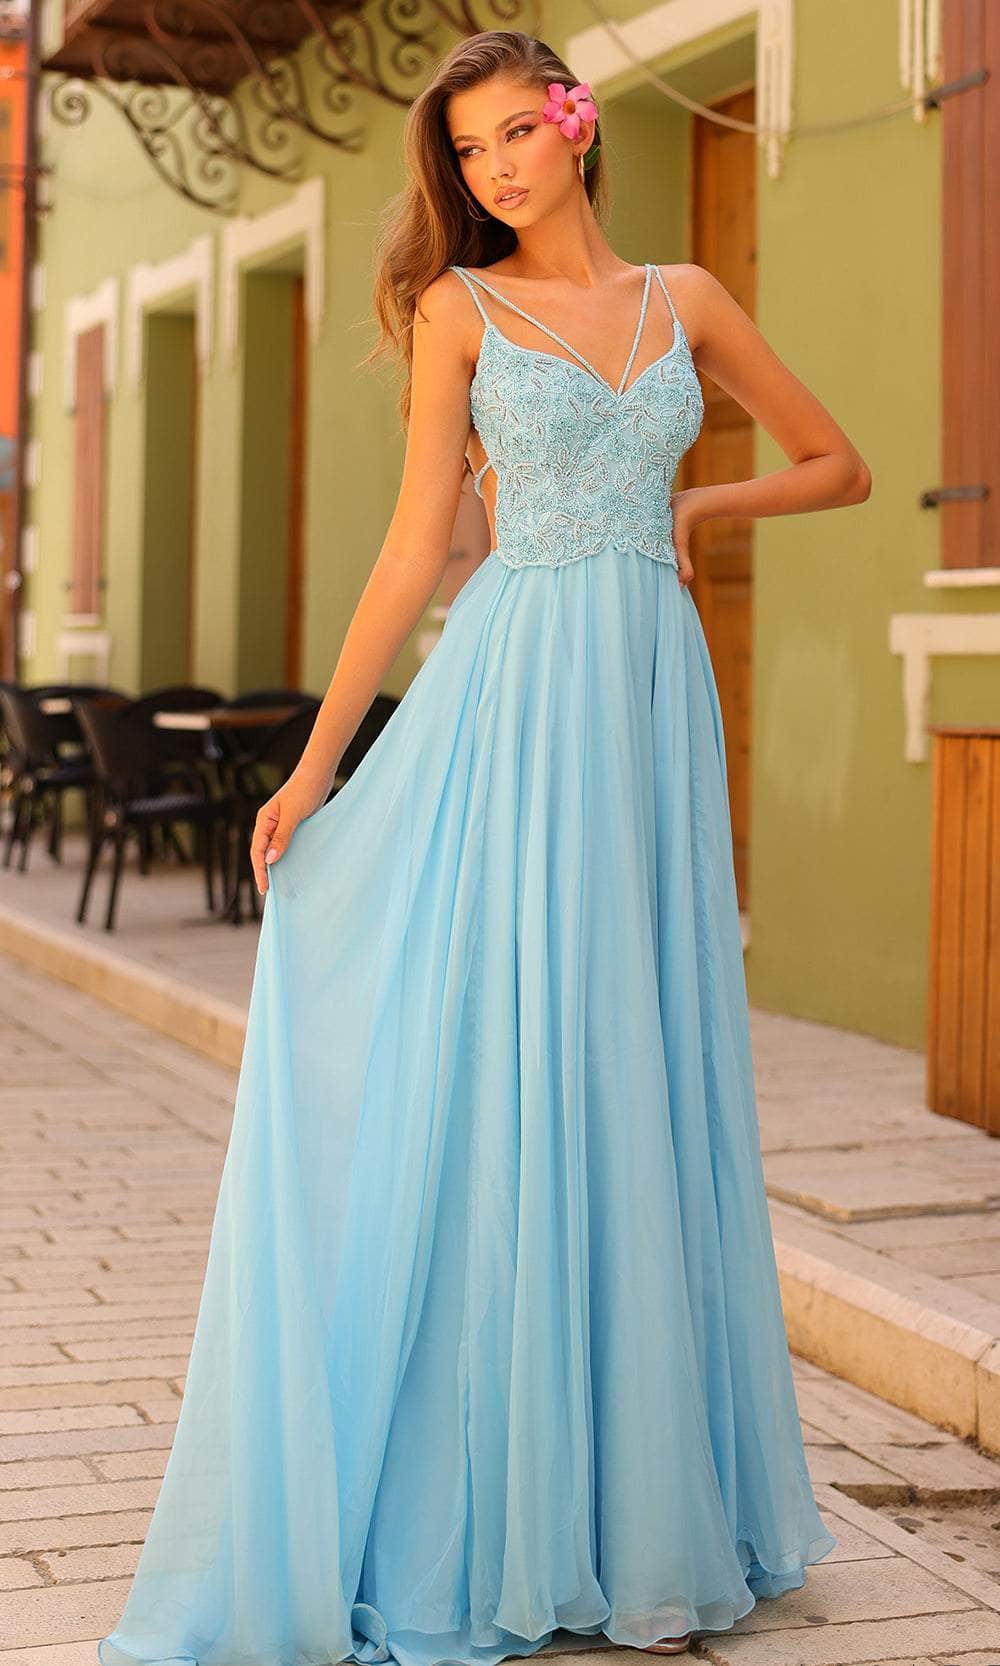 Amarra 94008 - Bead Embellished A-Line Evening Dress
